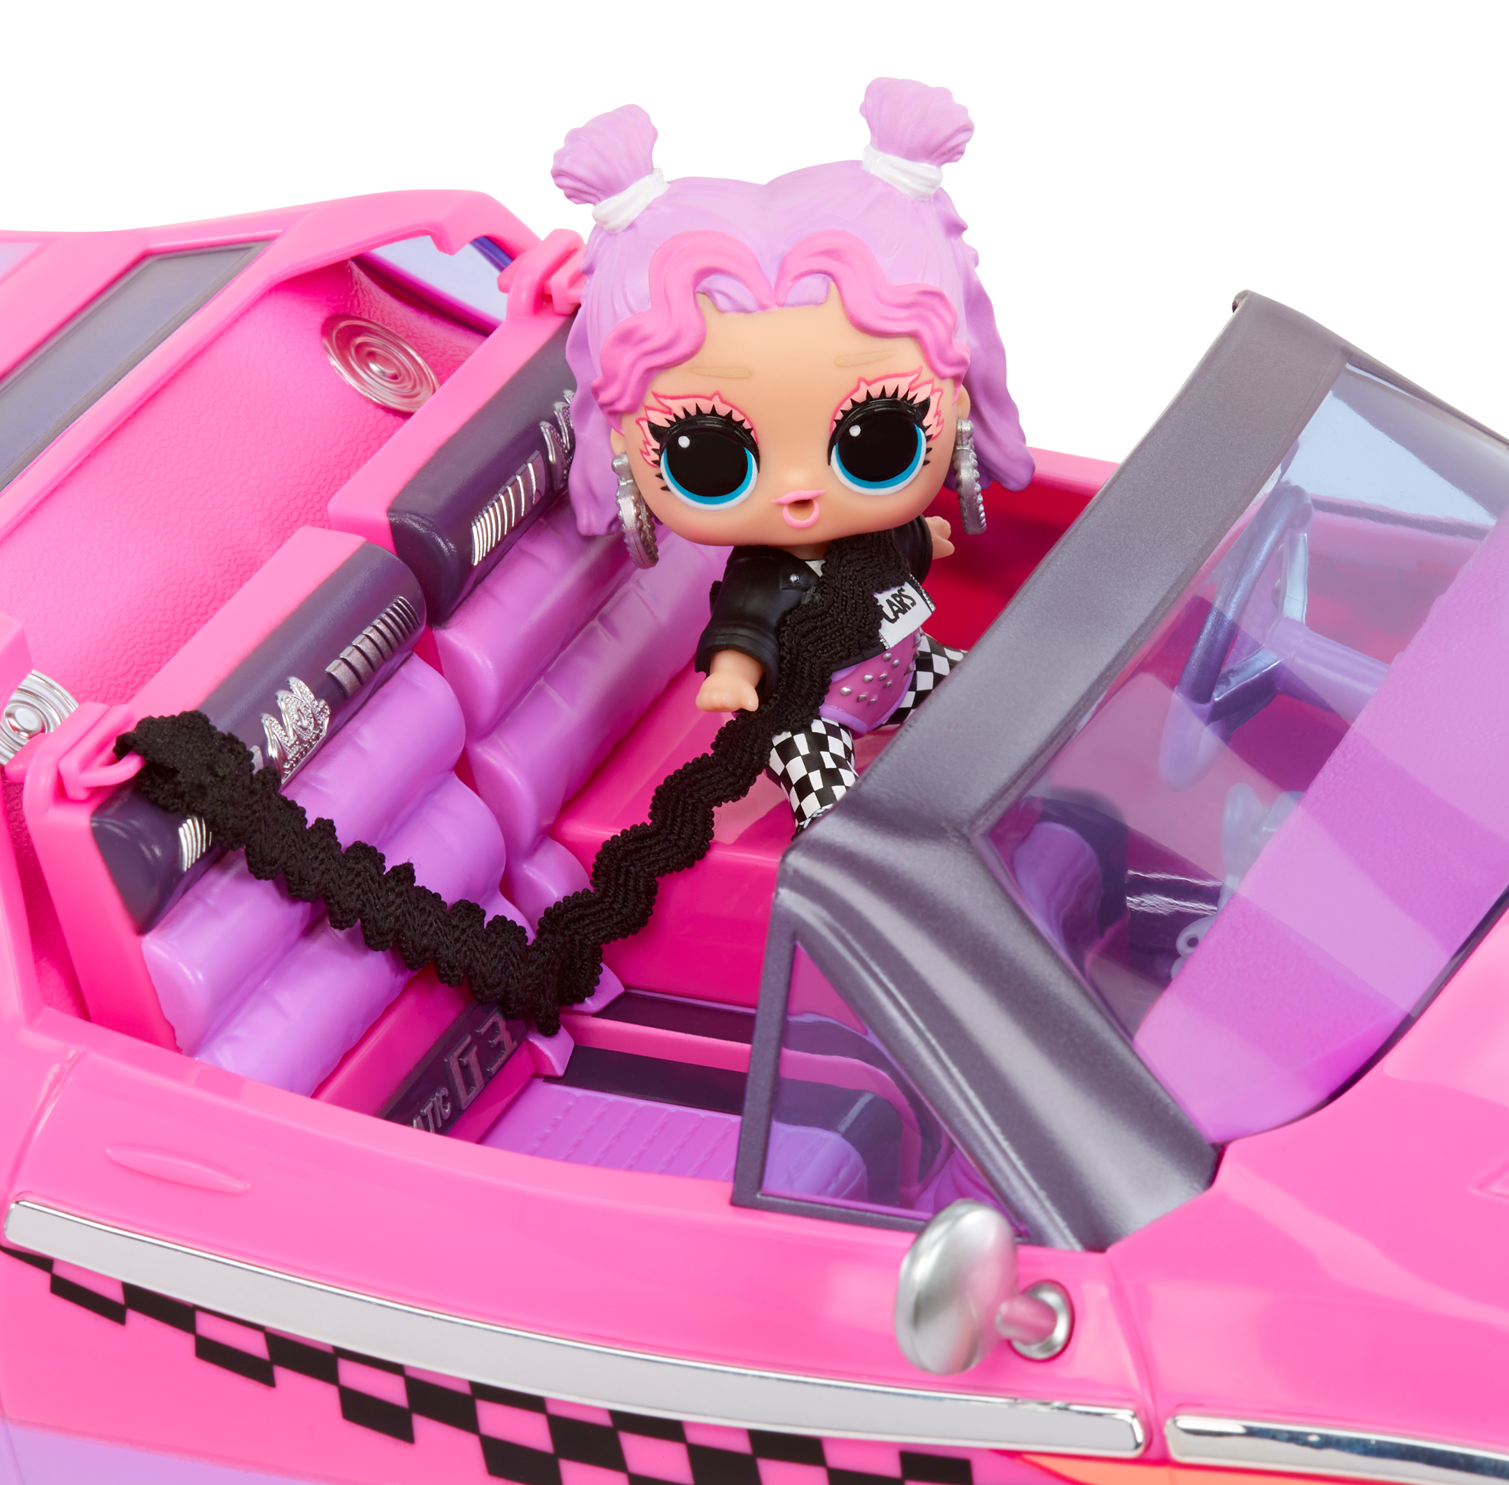 L.o.l. surprise! city cruiser - auto sportiva rosa e viola con caratteristiche favolose e un'esclusiva bambola beeps inclusa - LOL